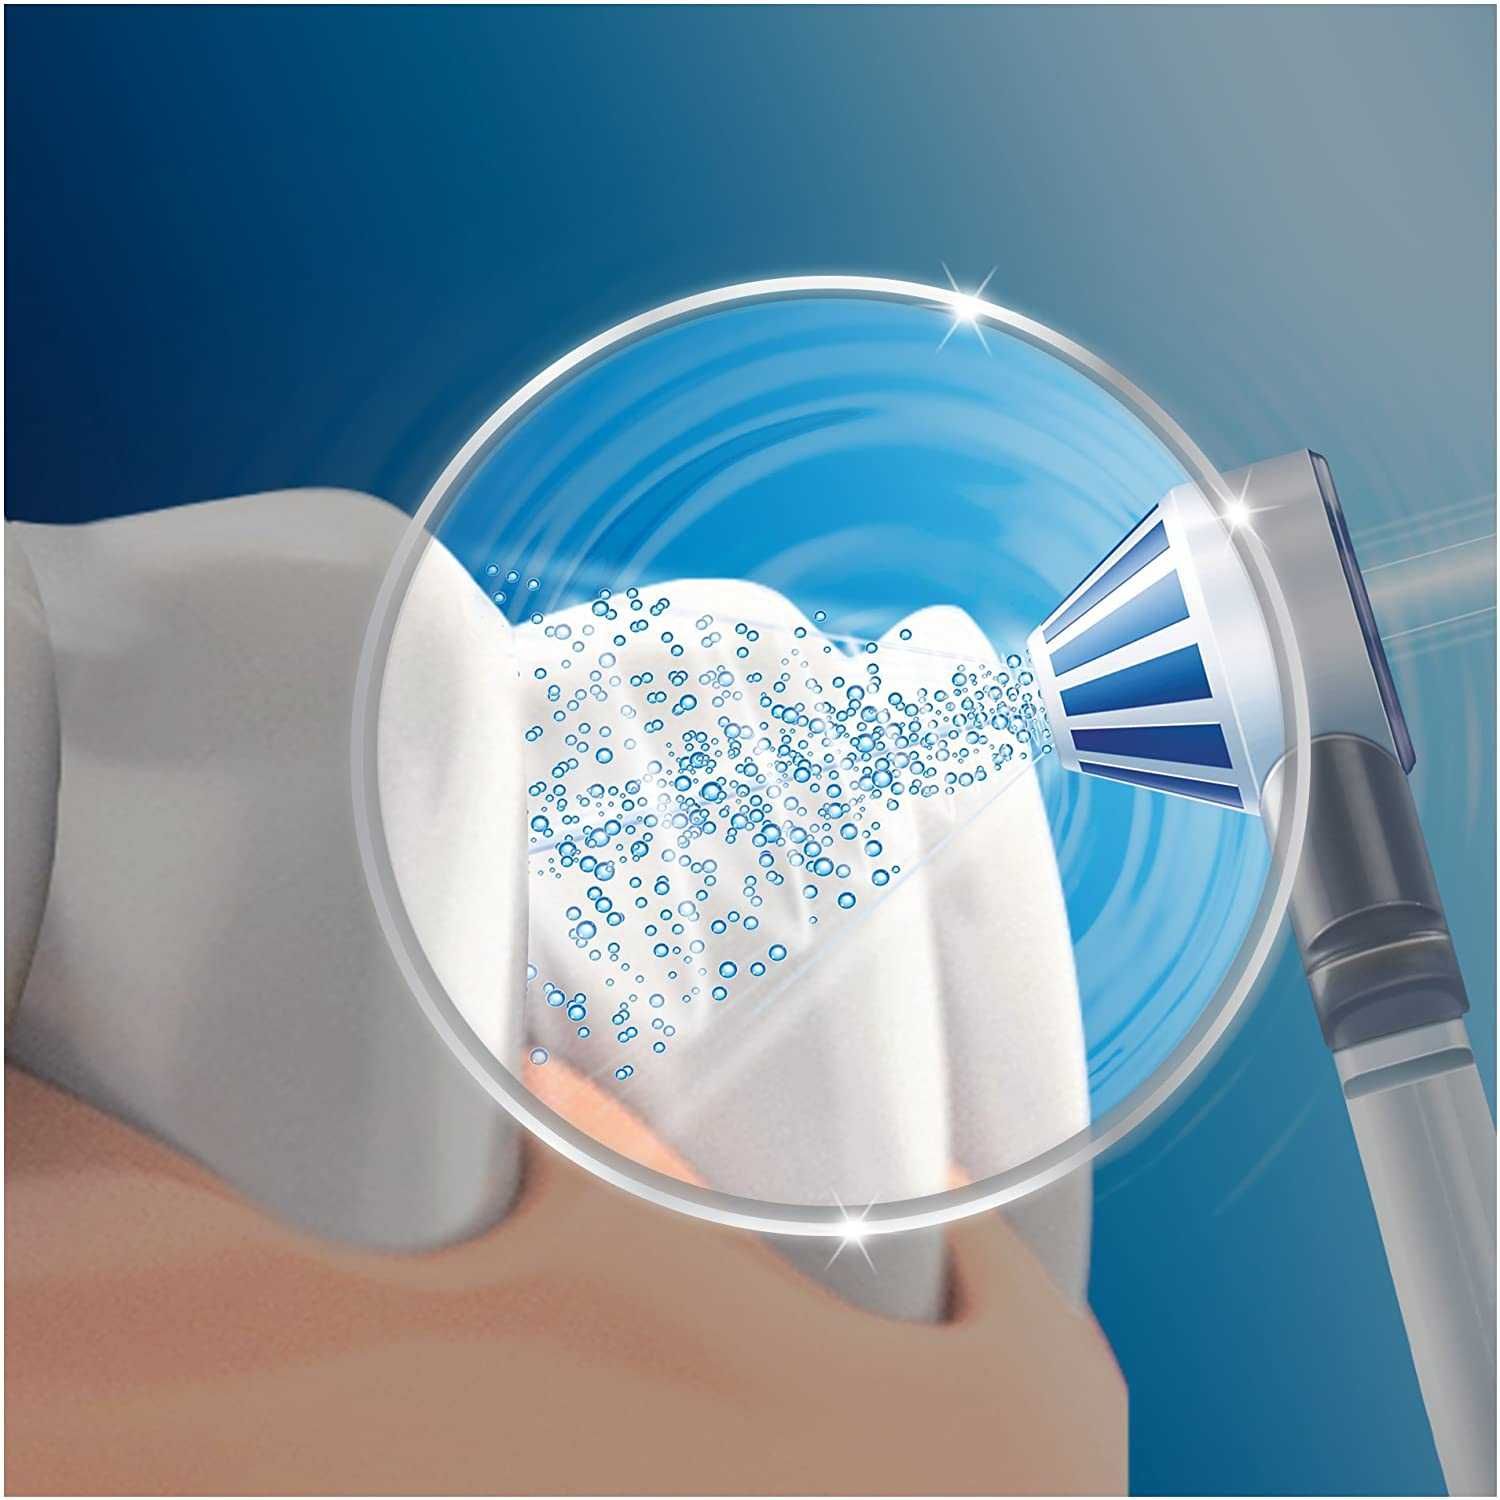 Irygator Oral-B OxyJet System czyszczenia MD20